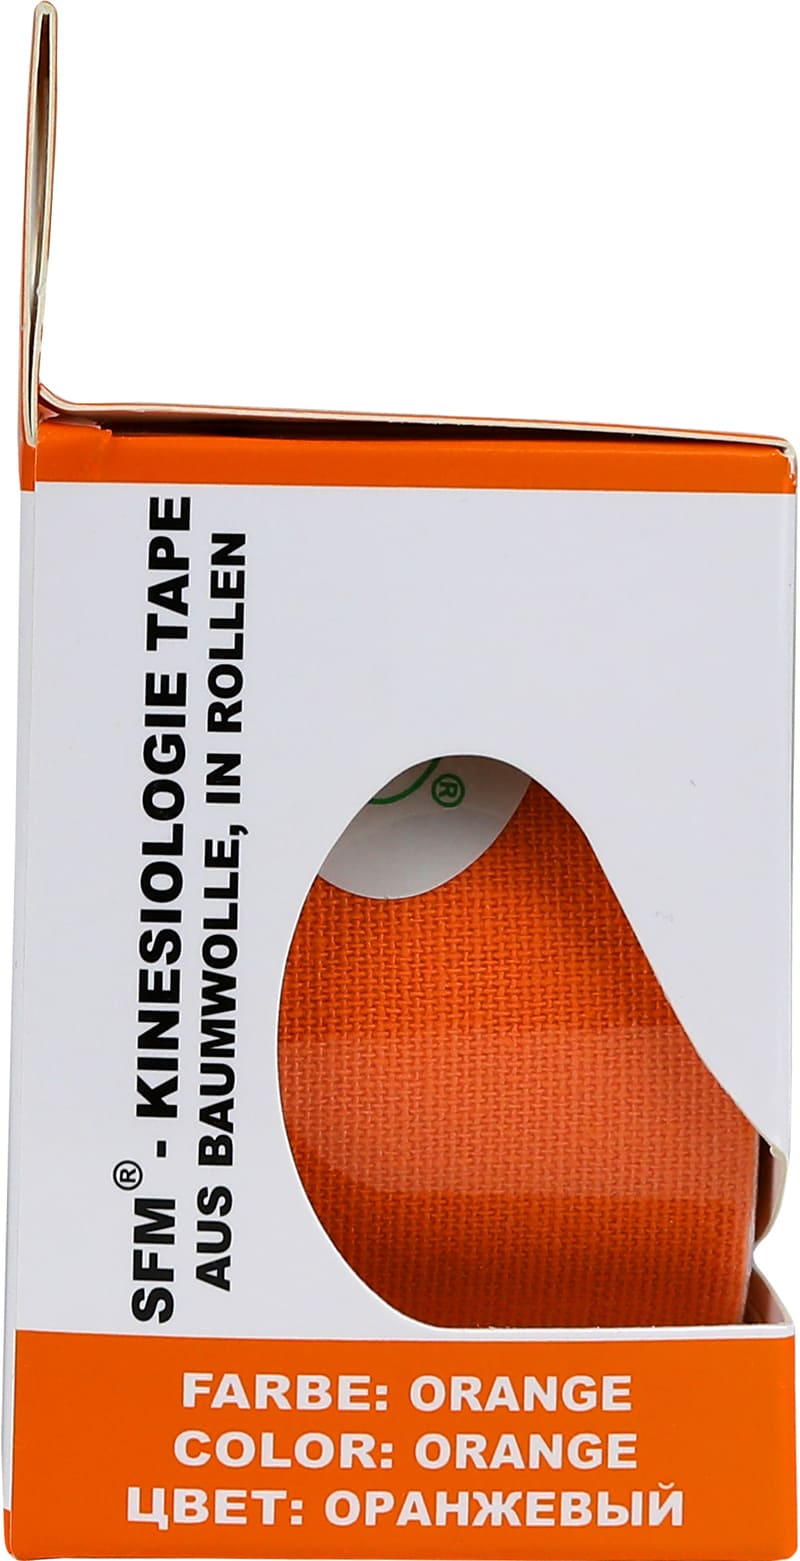 Лента кинезиологическая SFM-Plaster, на хлопковой основе, 5см Х 500см,  оранжевого цвета, в диспенсере